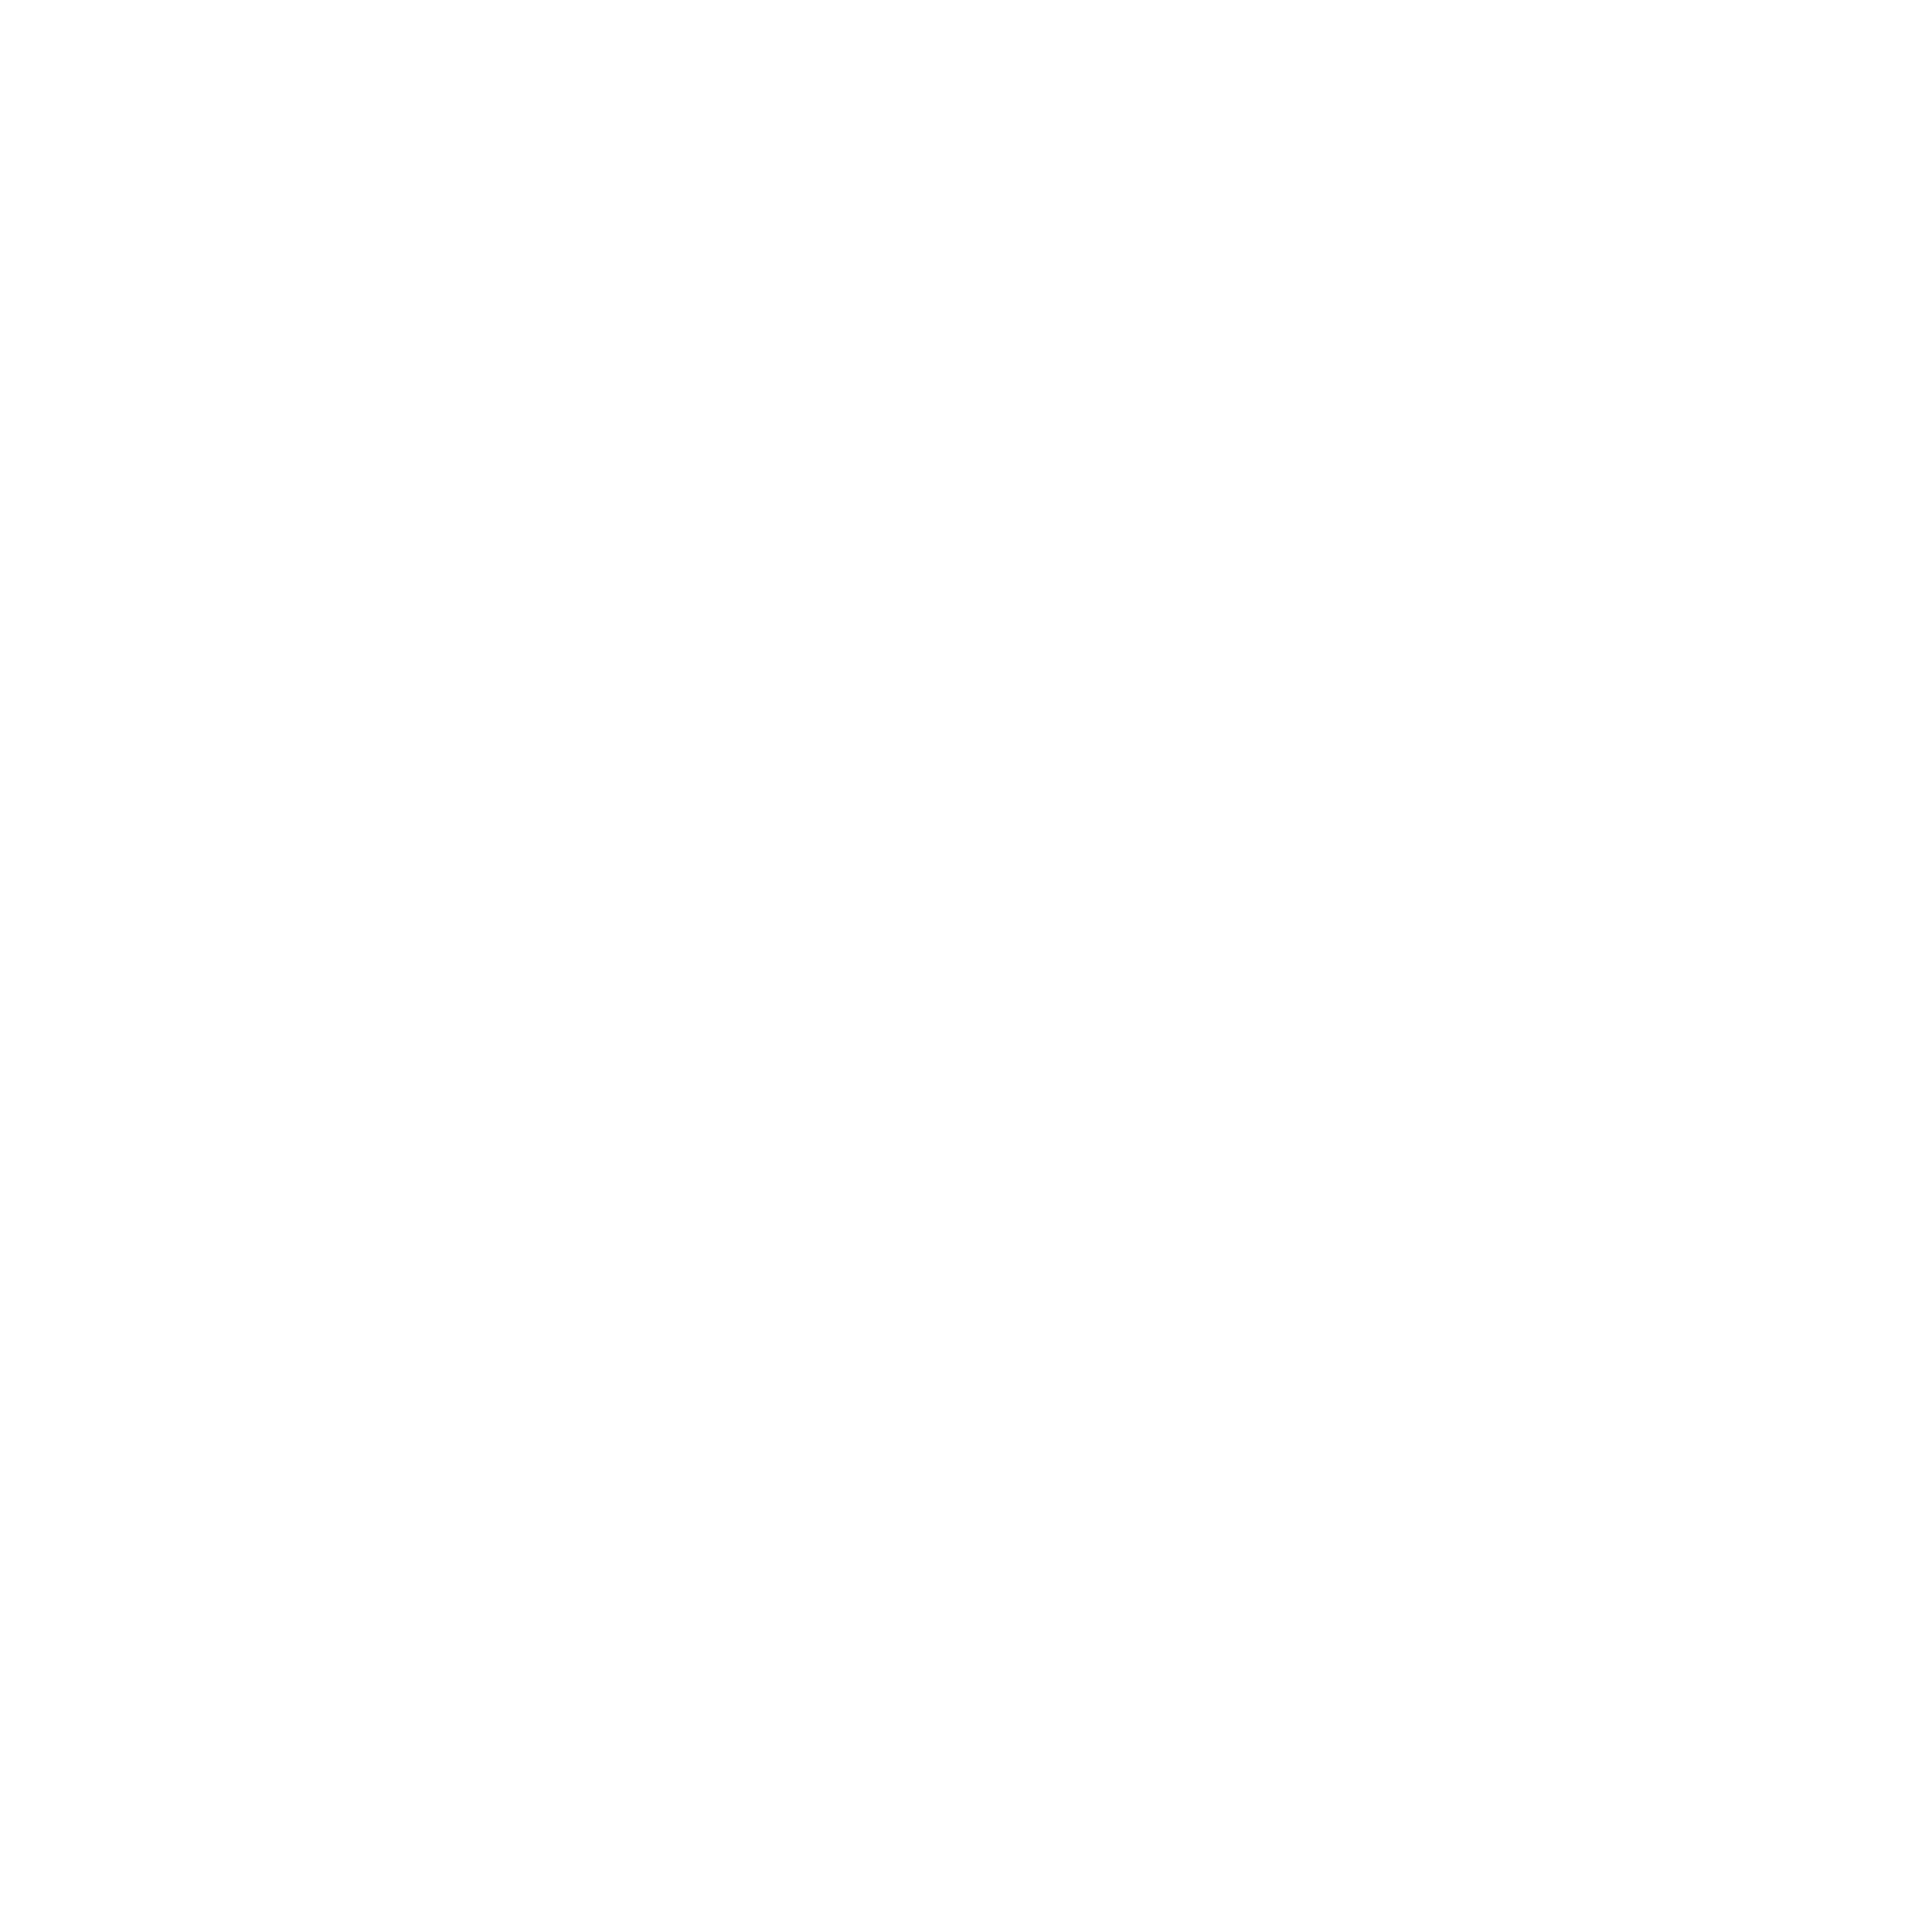 I Prefer Members' Choice Winner 2021 badge white